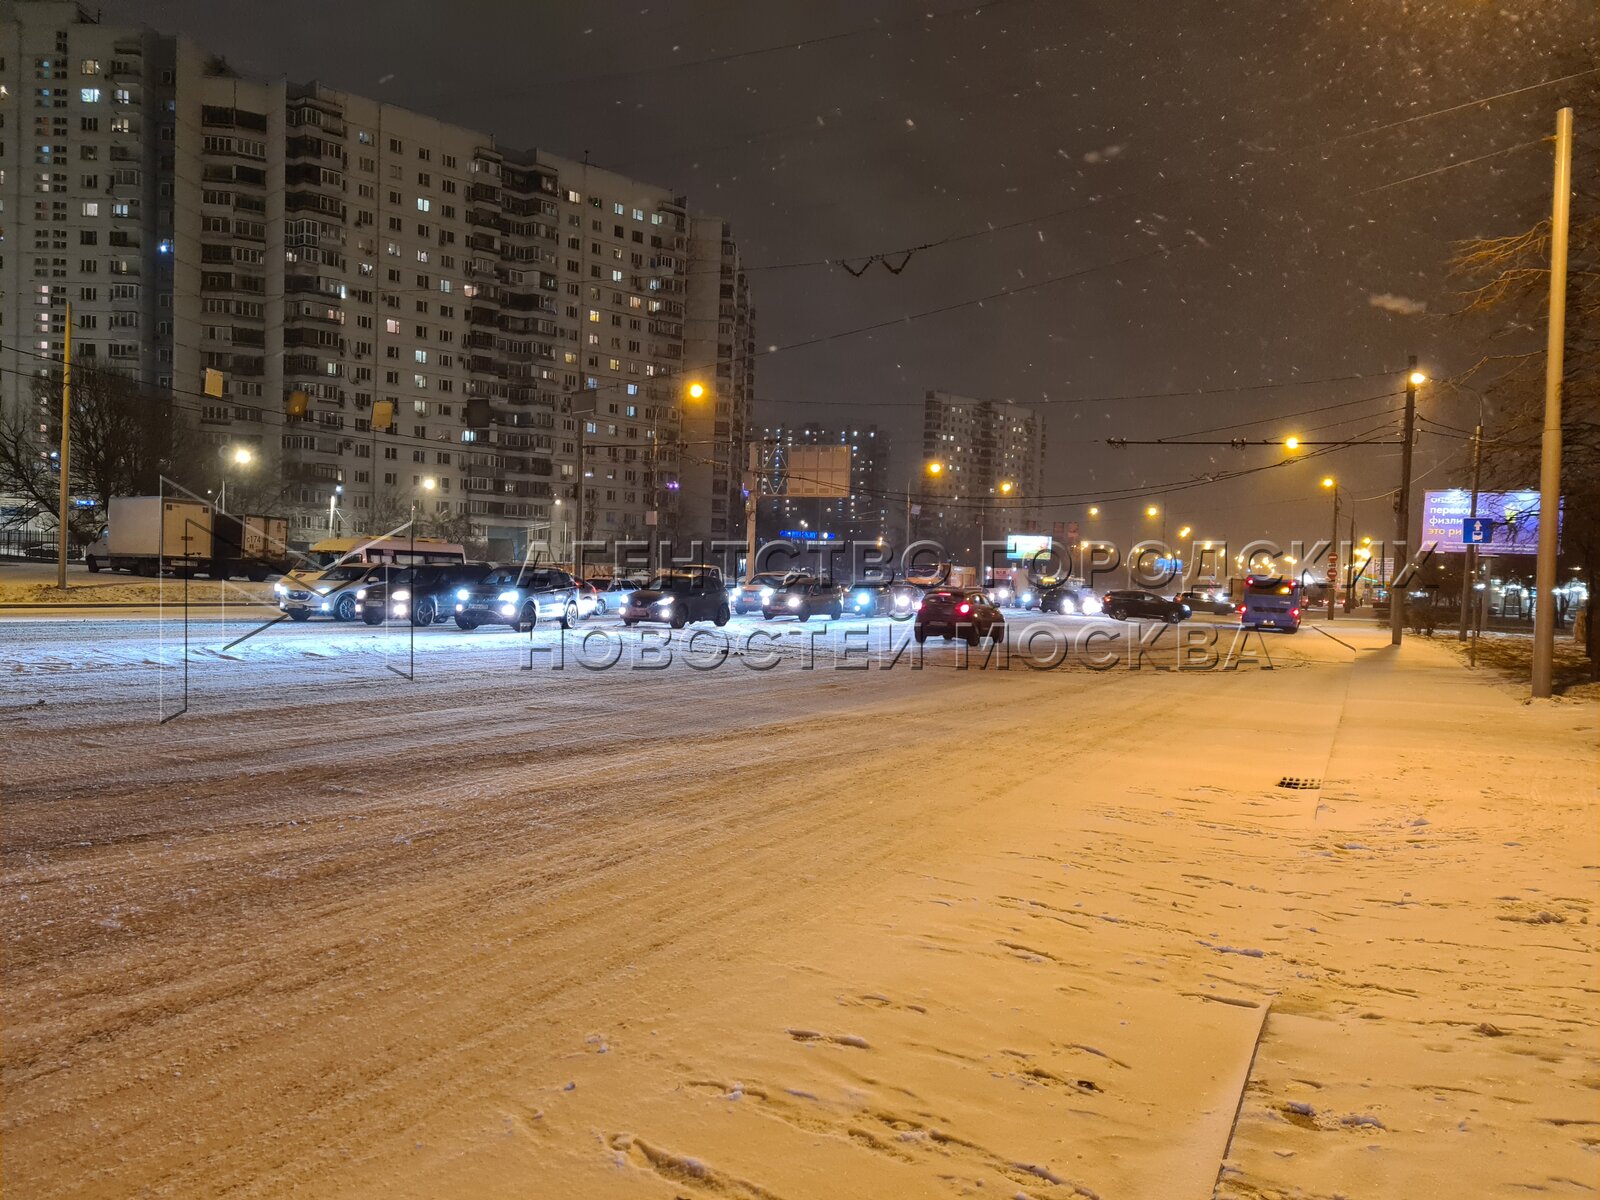 Сегодня вечером будет погода. Снегопад в Москве. Снег в городе. Снегопад Москва вечер. Зимний снегопад в Москве вечером.